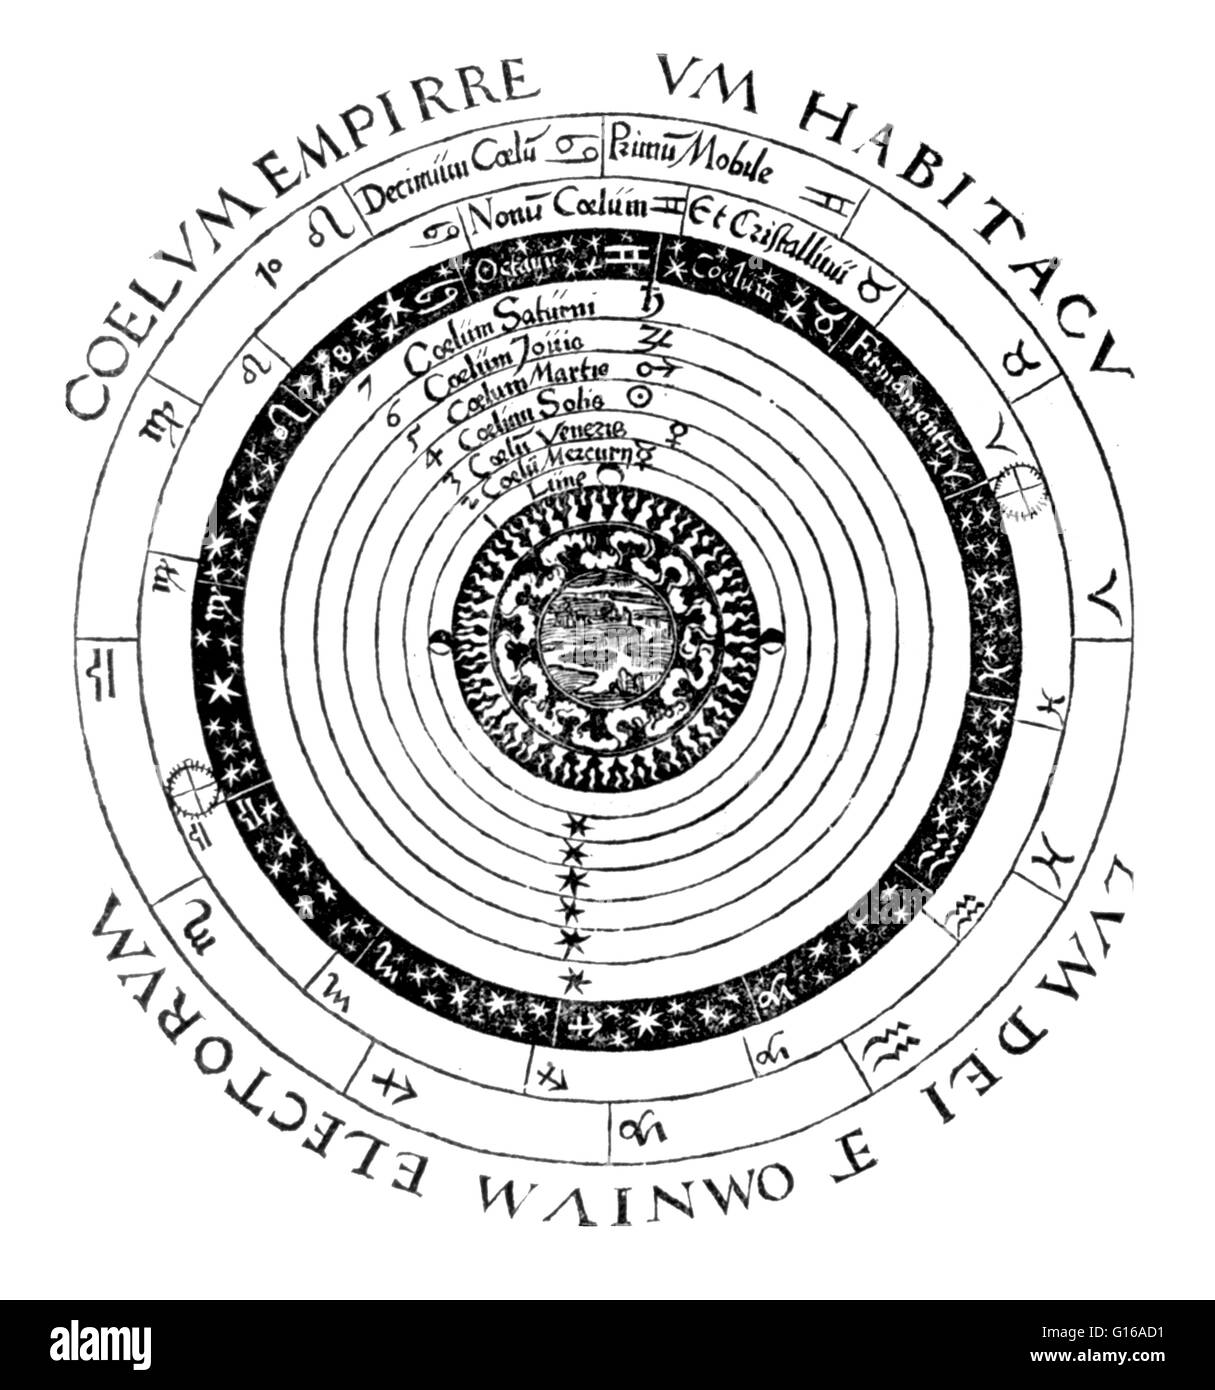 Los injertos de teoría aristotélica en la versión cristiana del cosmos, el grabado de Peter Apian's Cosmographicus liber (1524). Petrus Apianus (16 de abril de 1495 - 21 de abril de 1552) fue un humanista alemán, conocido por sus trabajos en matemáticas, astronomía un Foto de stock